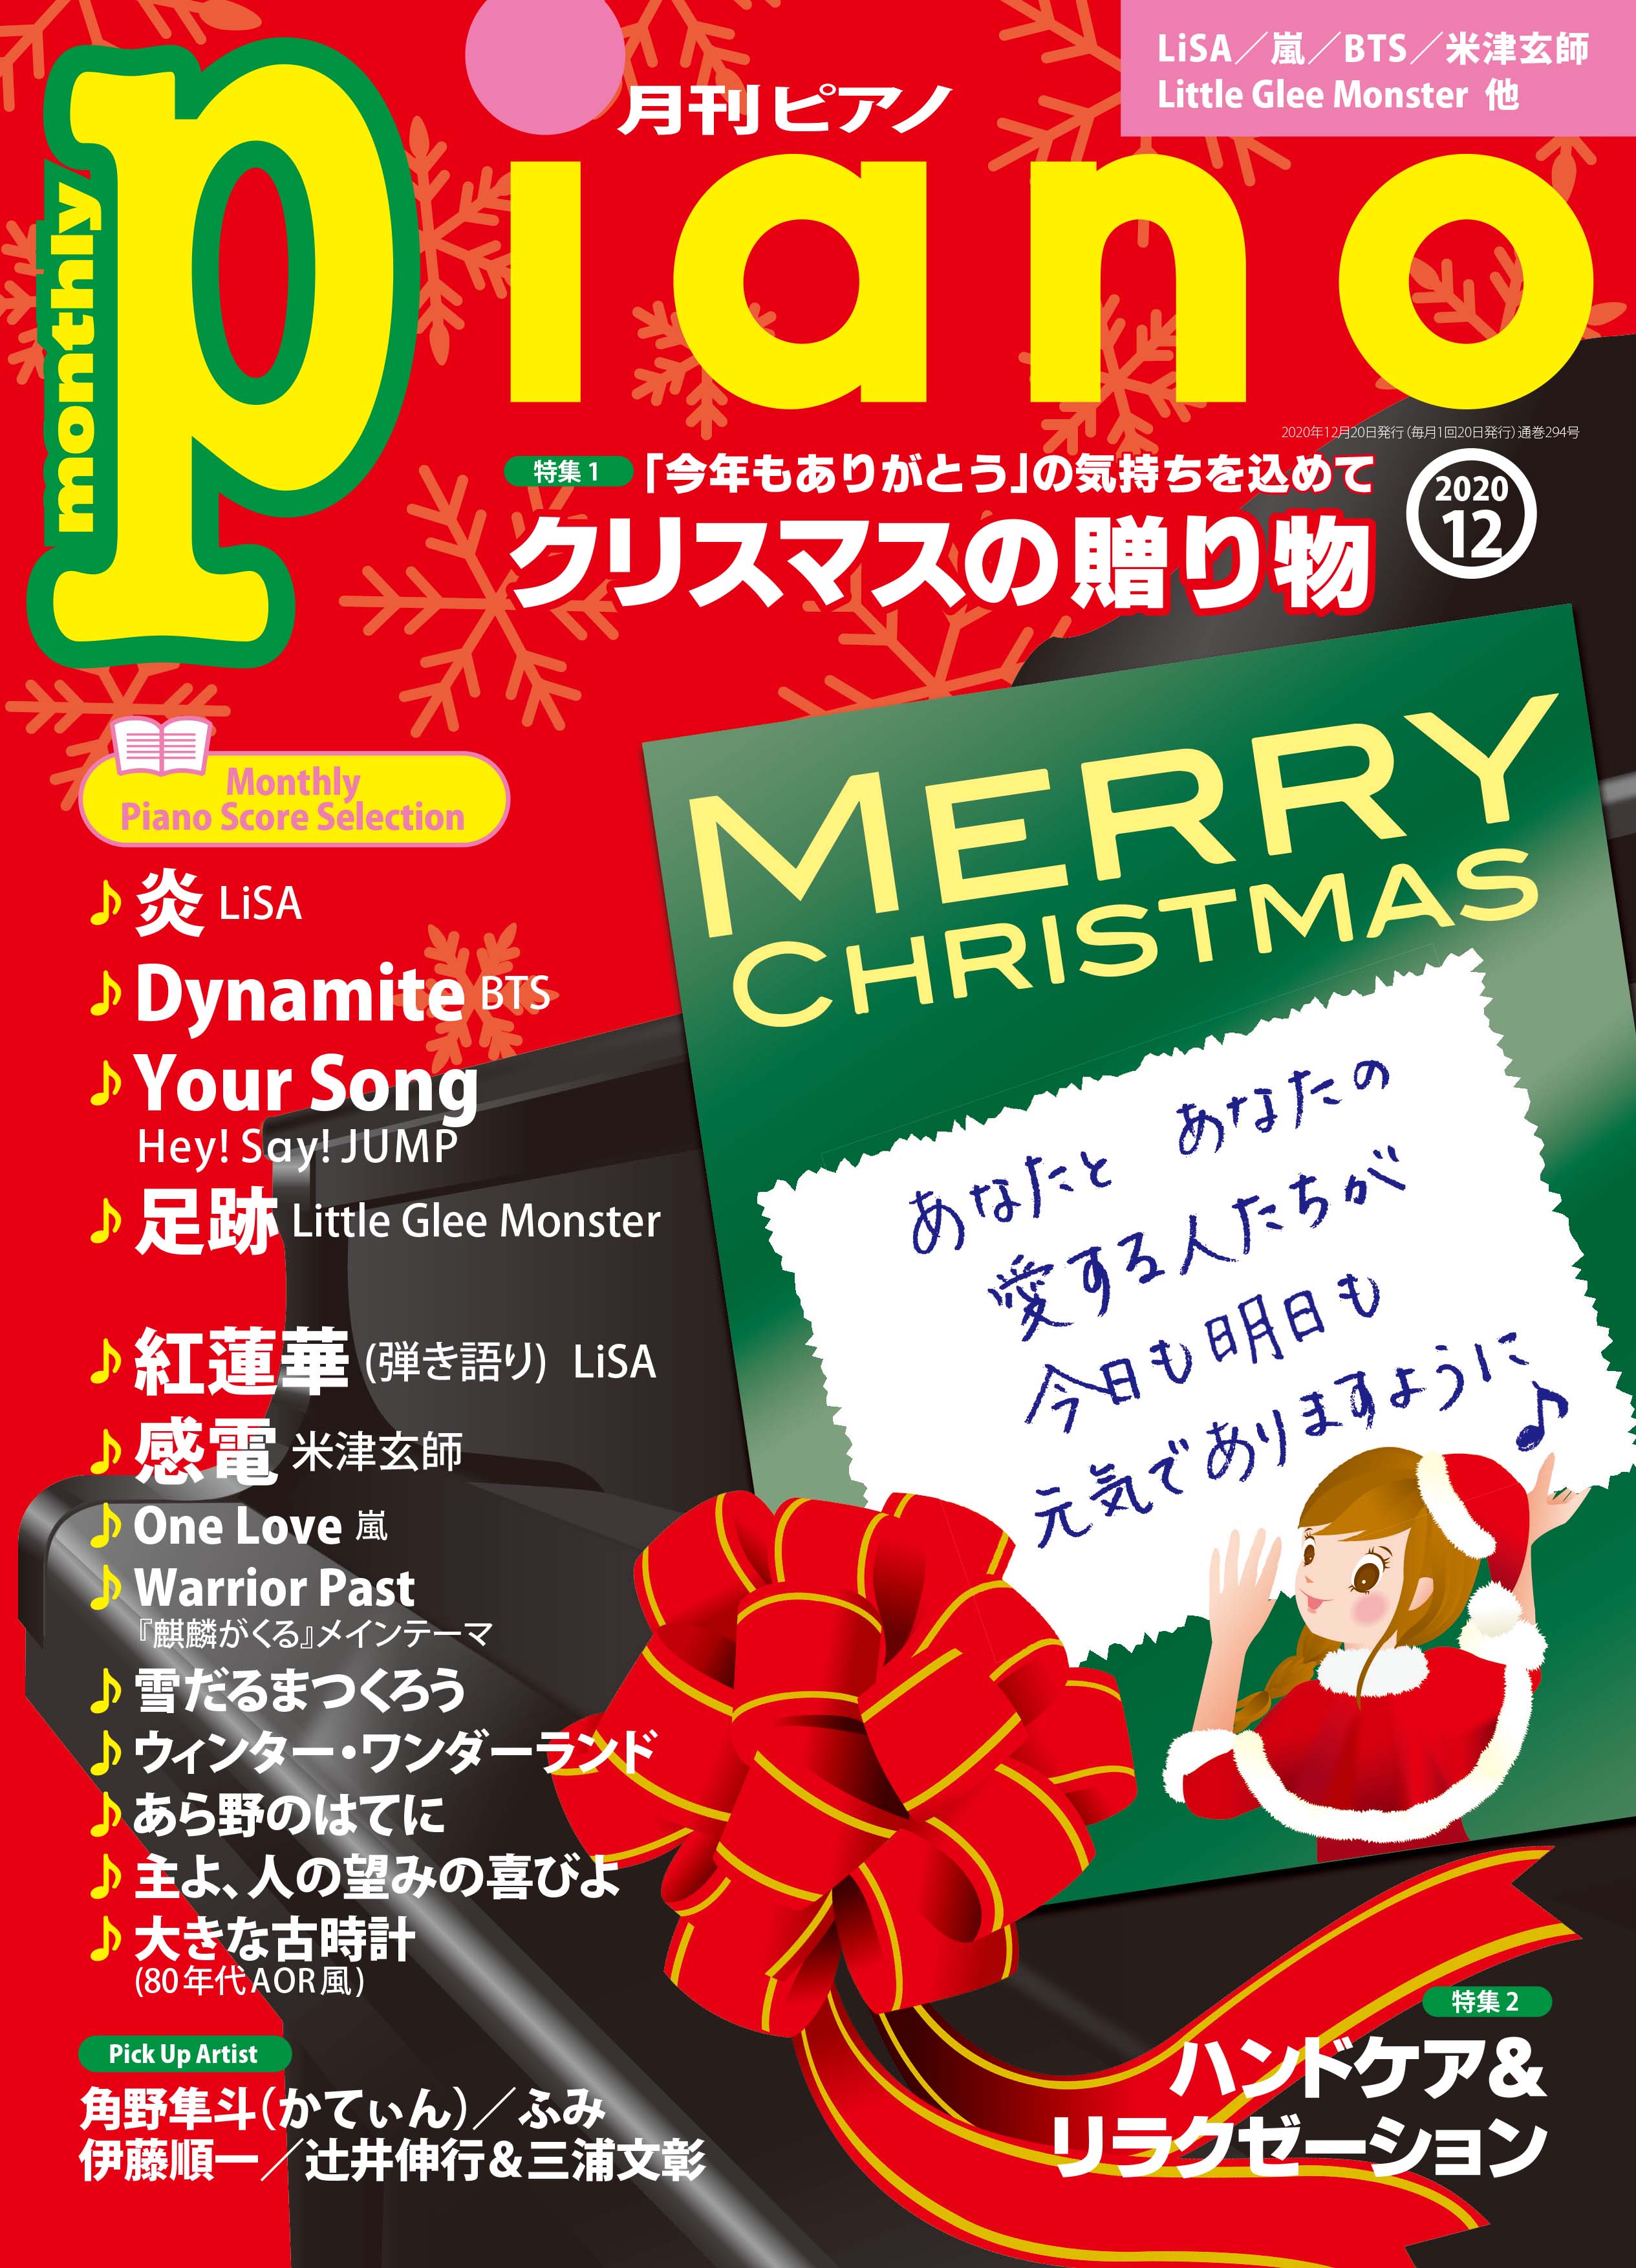 今月の特集は「クリスマスの贈り物」&「ハンドケア&リラクゼーション」『月刊ピアノ2020年12月号』 2020年11月20日発売